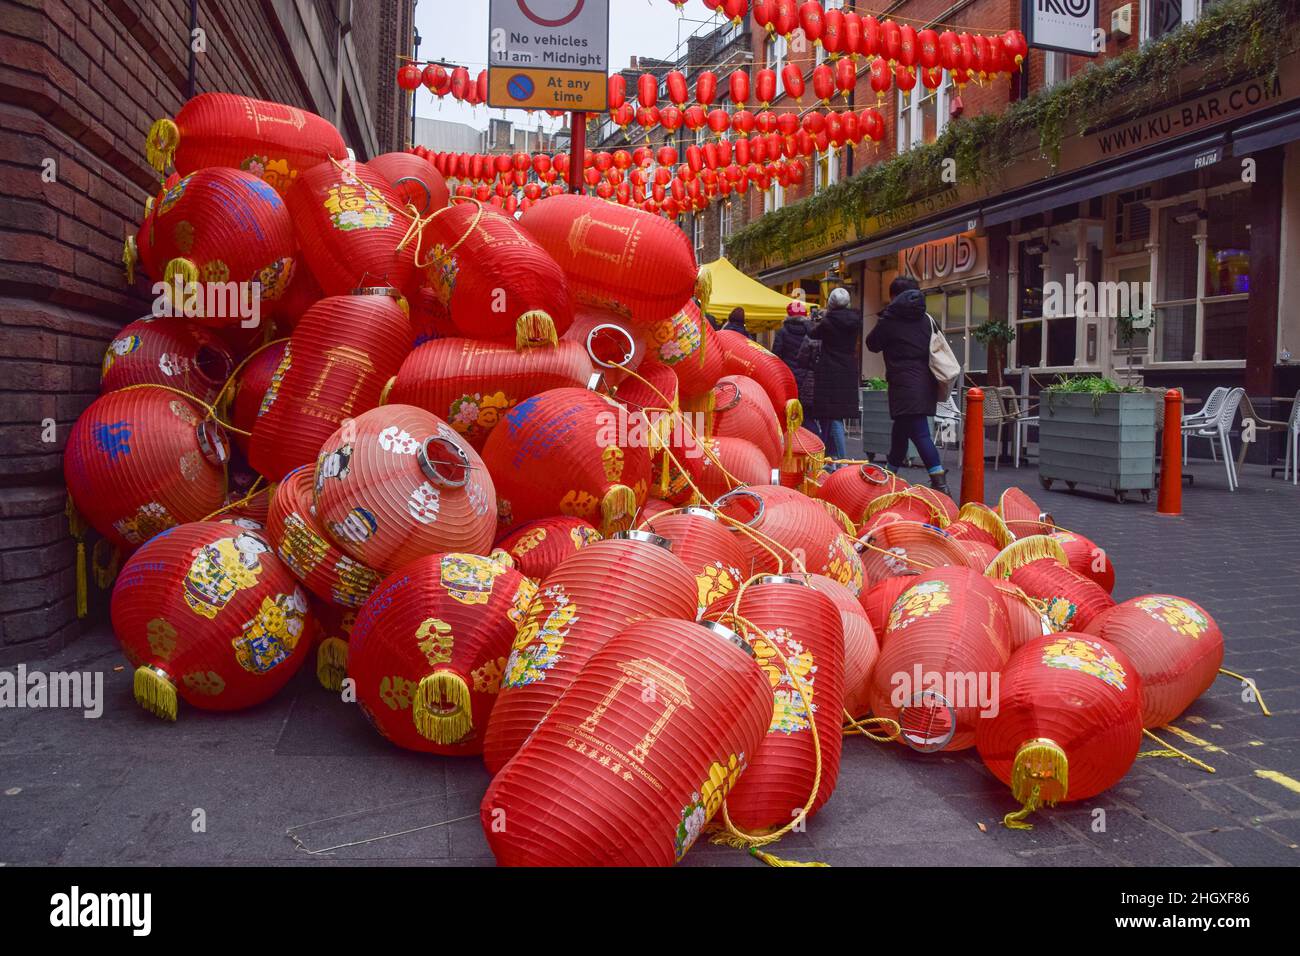 Londres, Royaume-Uni.22nd janvier 2022.Une grande pile de vieilles lanternes jetées est vue dans la rue du quartier chinois de Londres, alors que de nouvelles lanternes rouges ont été installées avant le nouvel an chinois.Crédit : SOPA Images Limited/Alamy Live News Banque D'Images